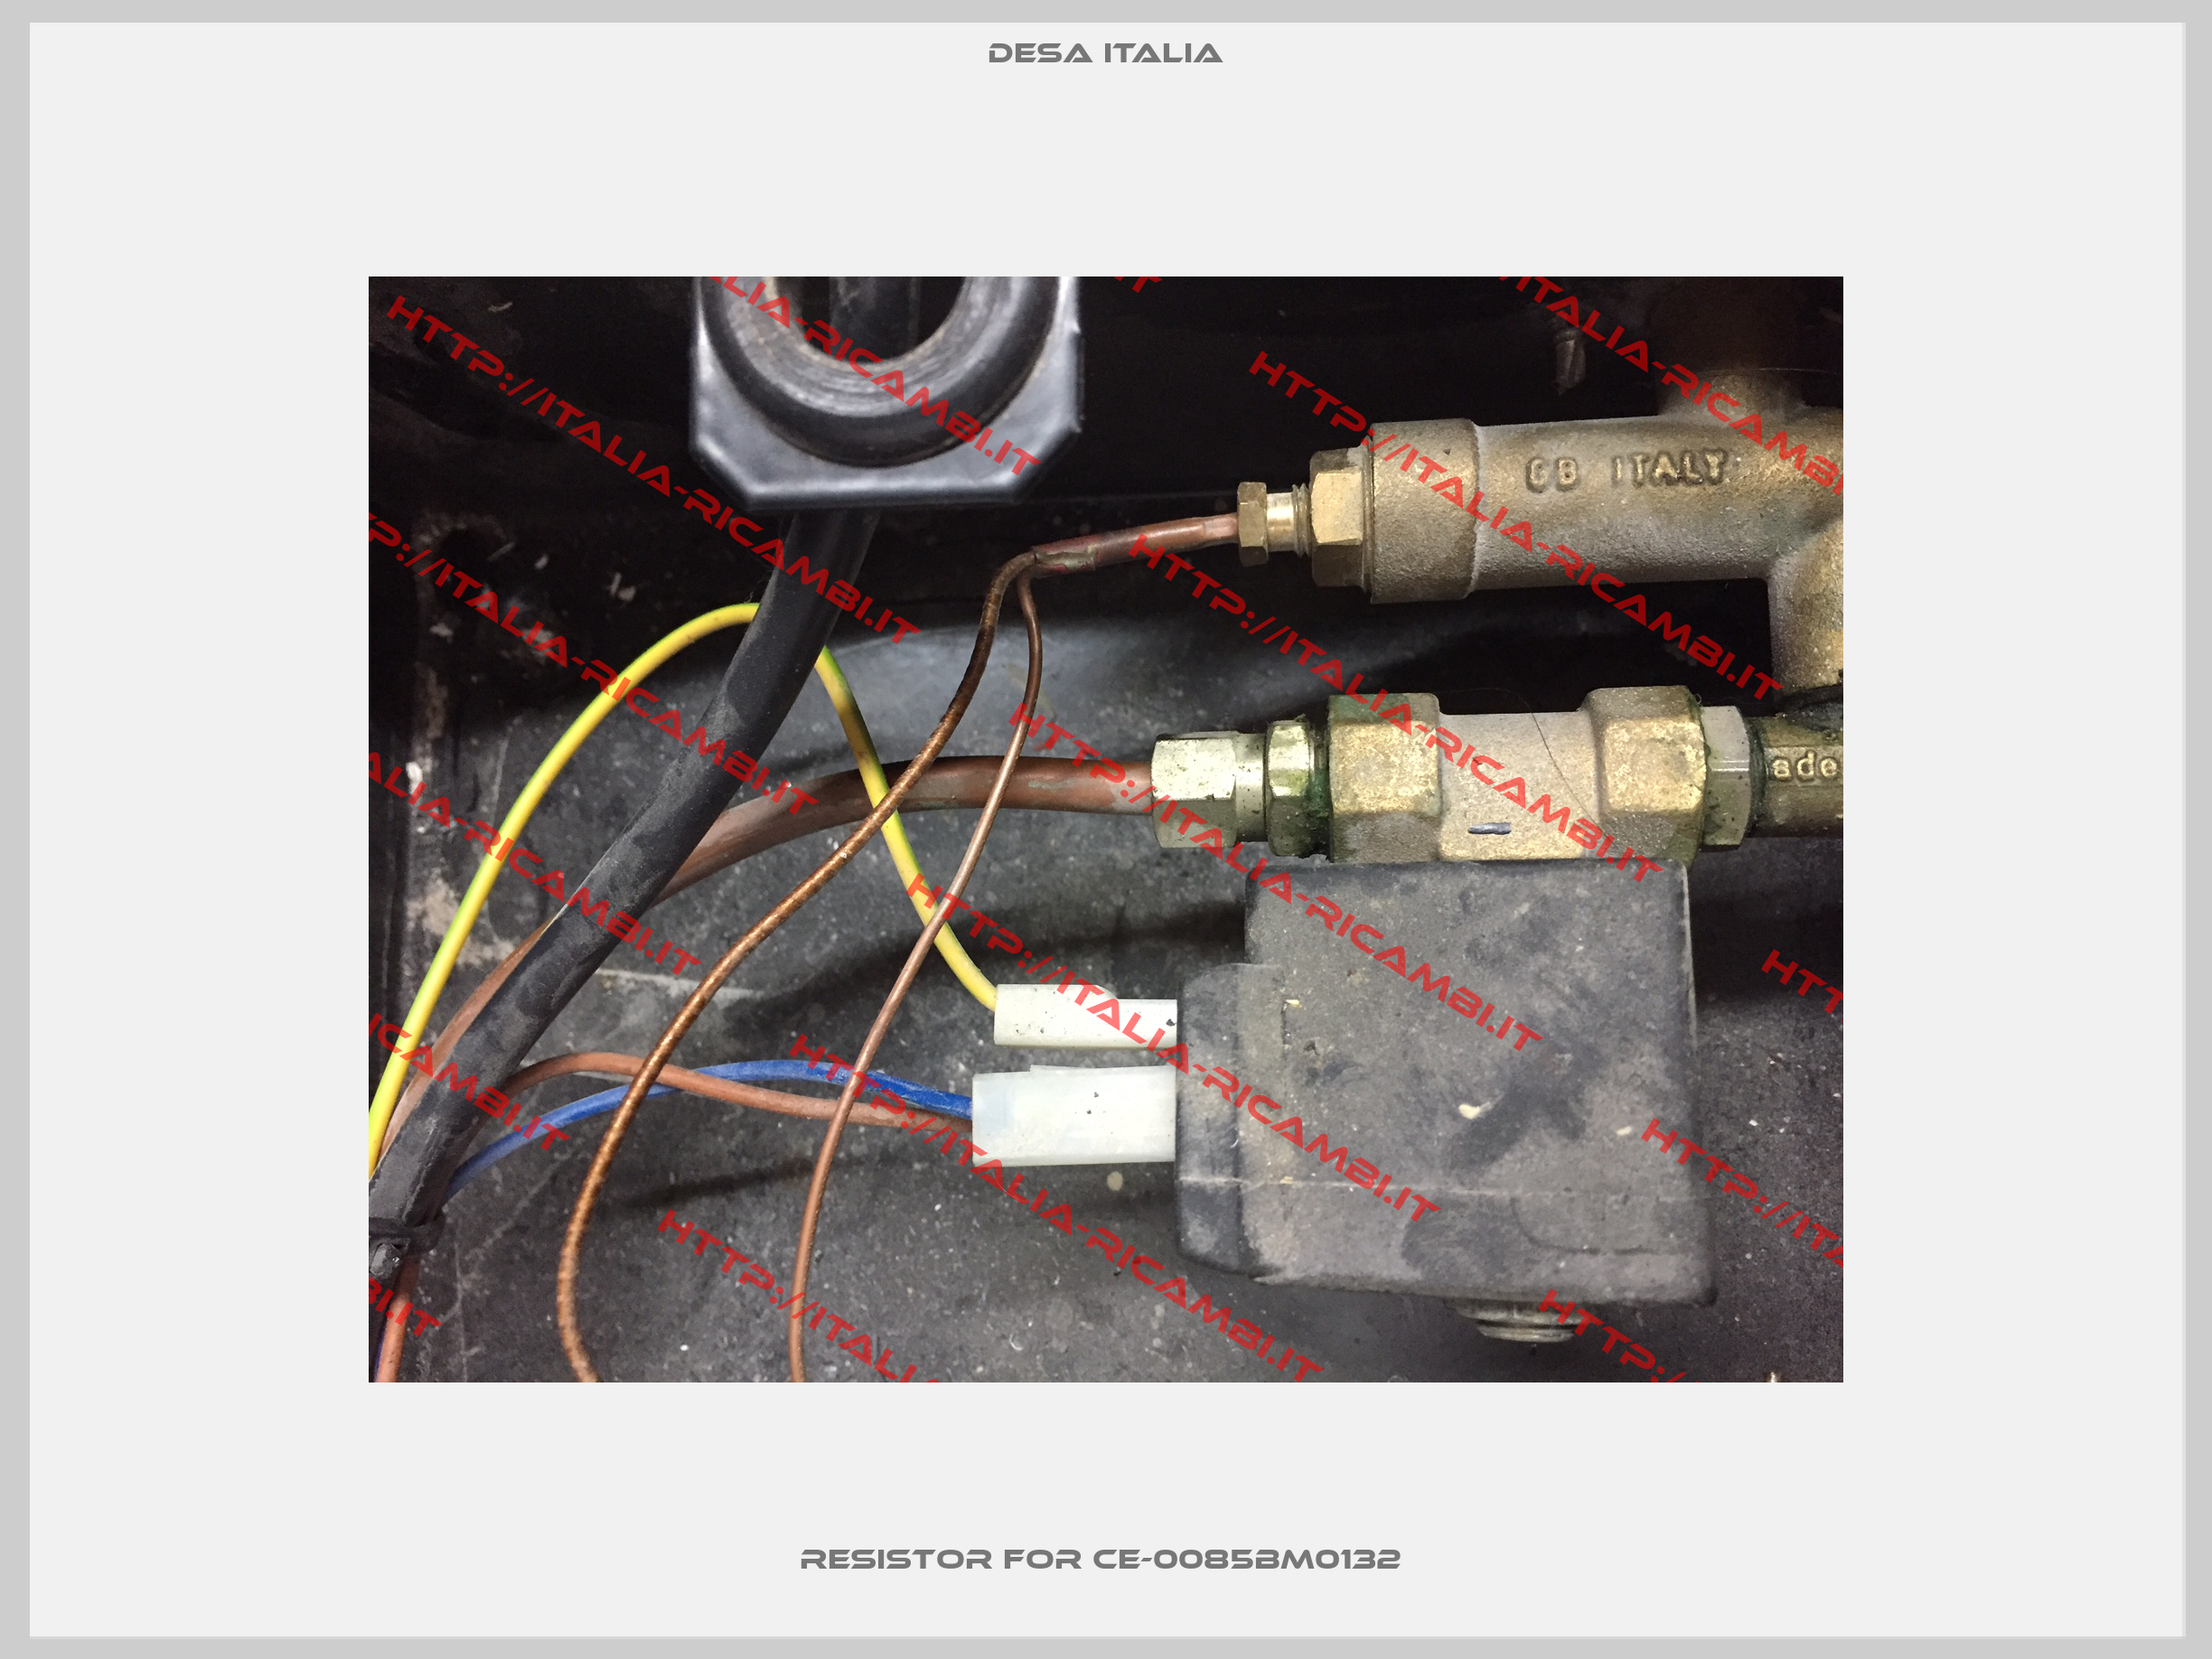 Resistor for CE-0085BM0132 -2